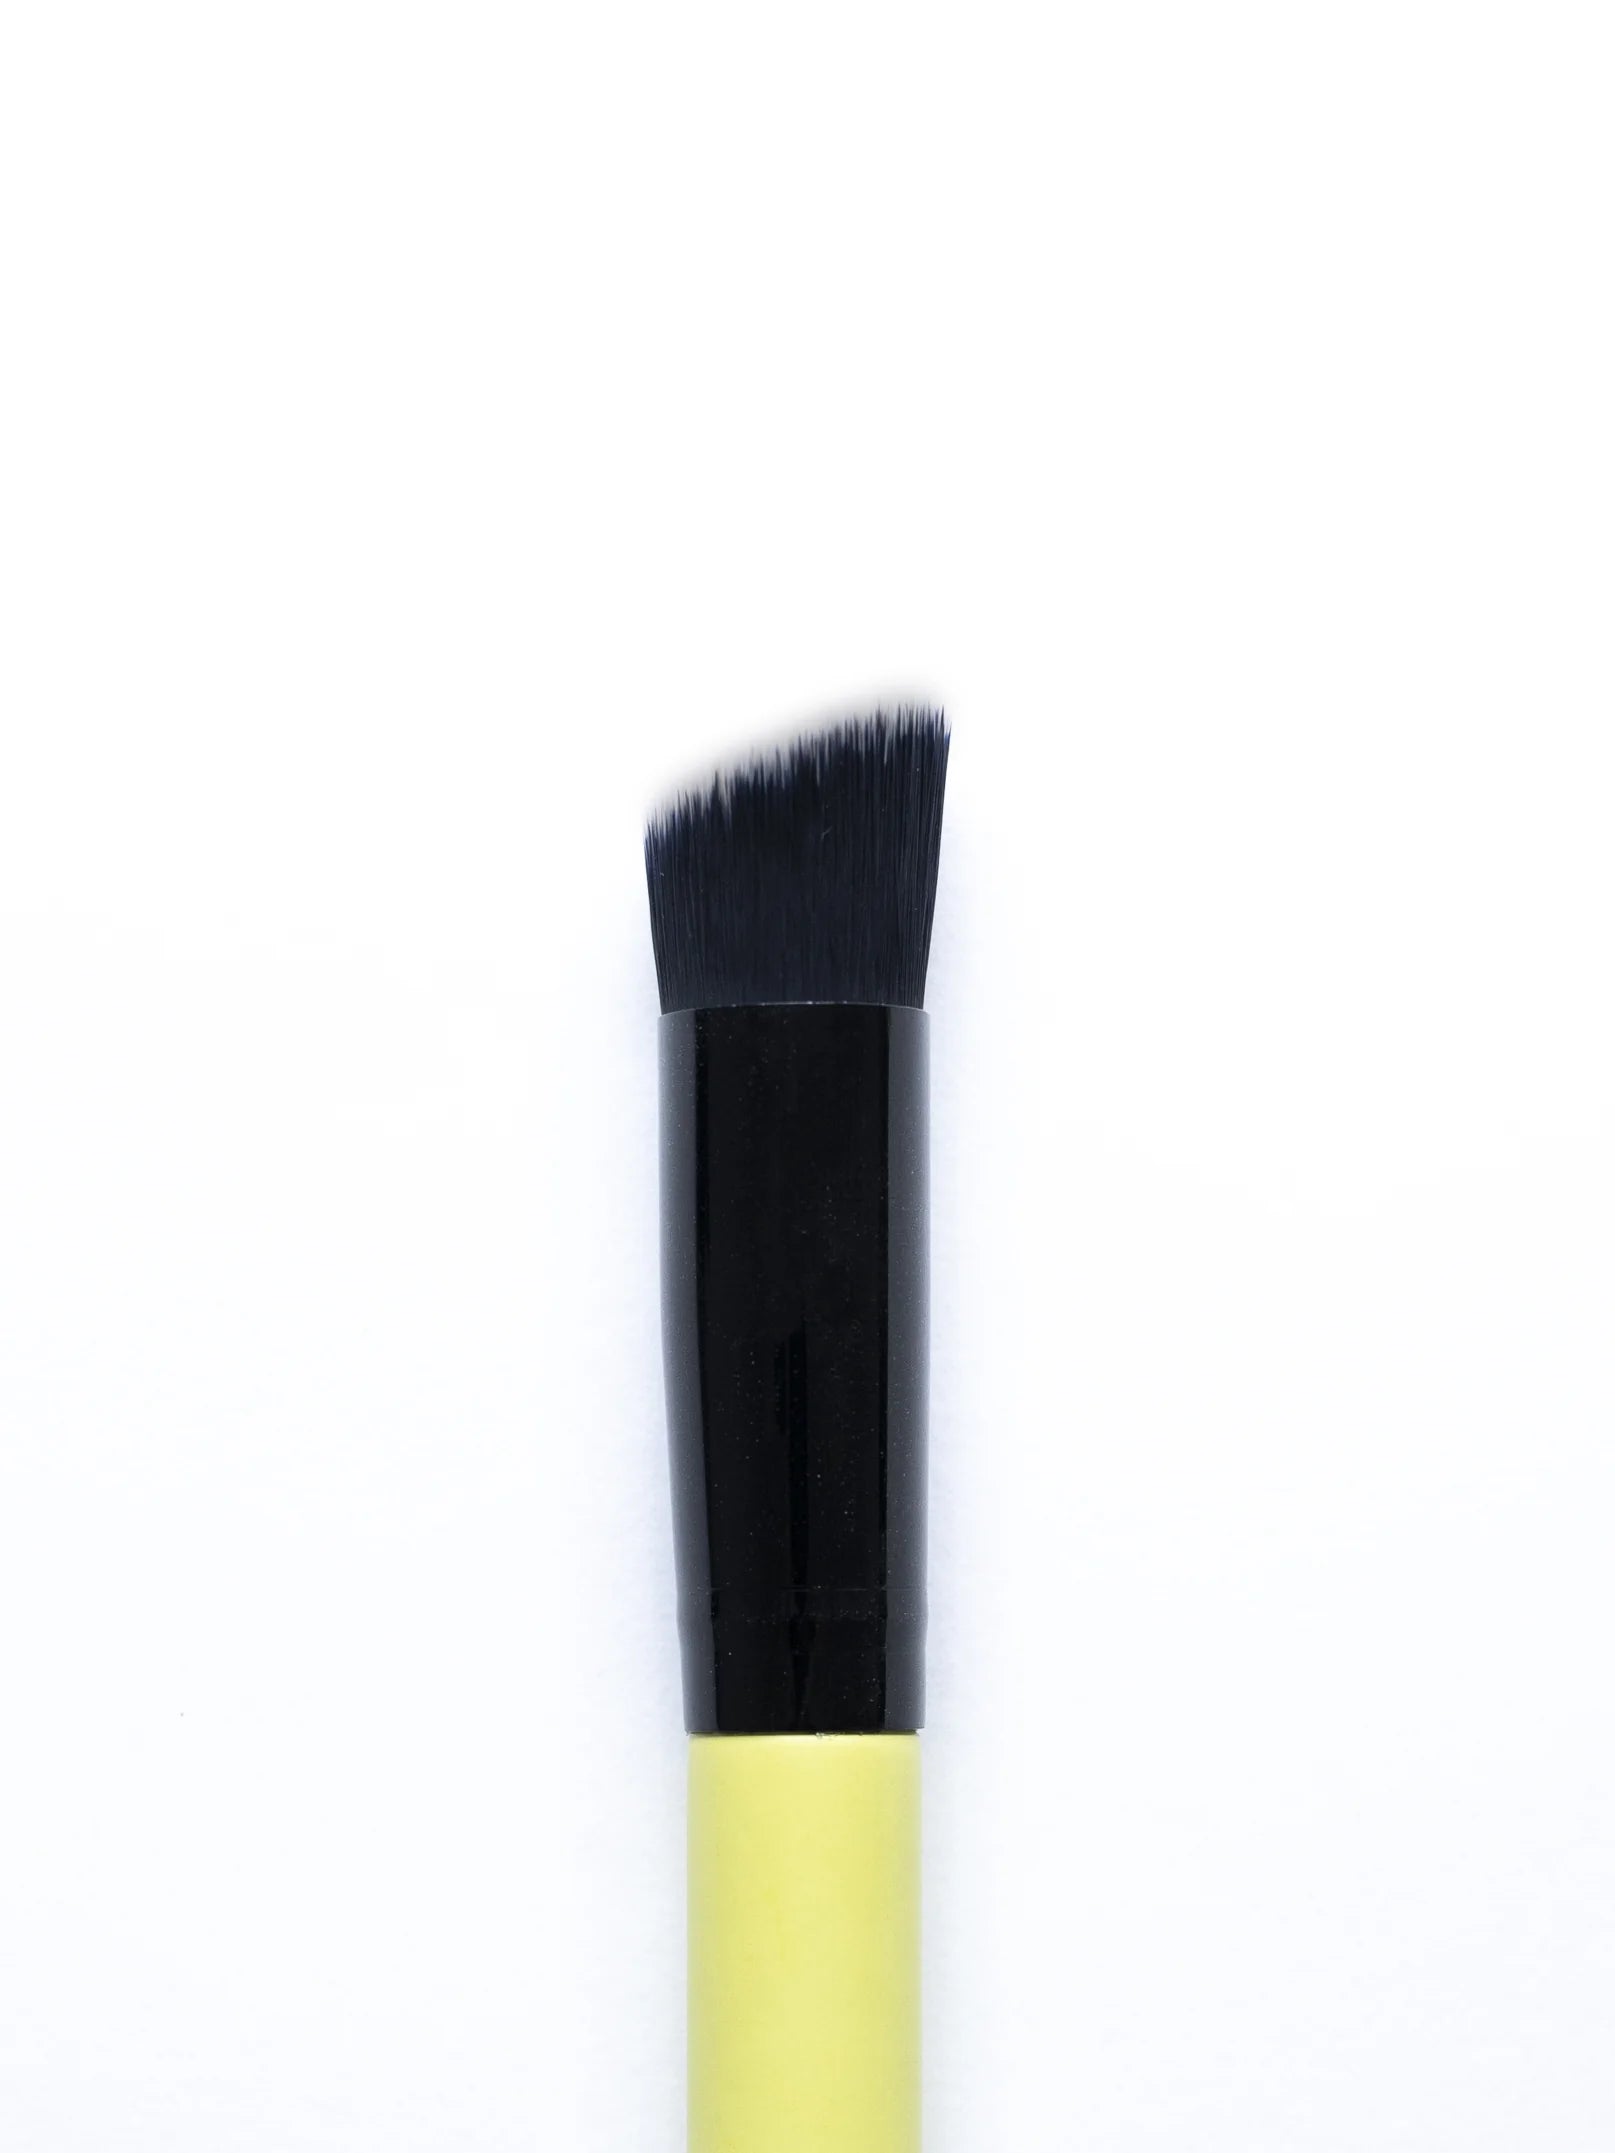 Detailed Foundation / Concealer Brush 34 Make-up Brush EDY LONDON Lemon   - EDY LONDON PRODUCTS UK - The Best Makeup Brushes - shop.edy.london